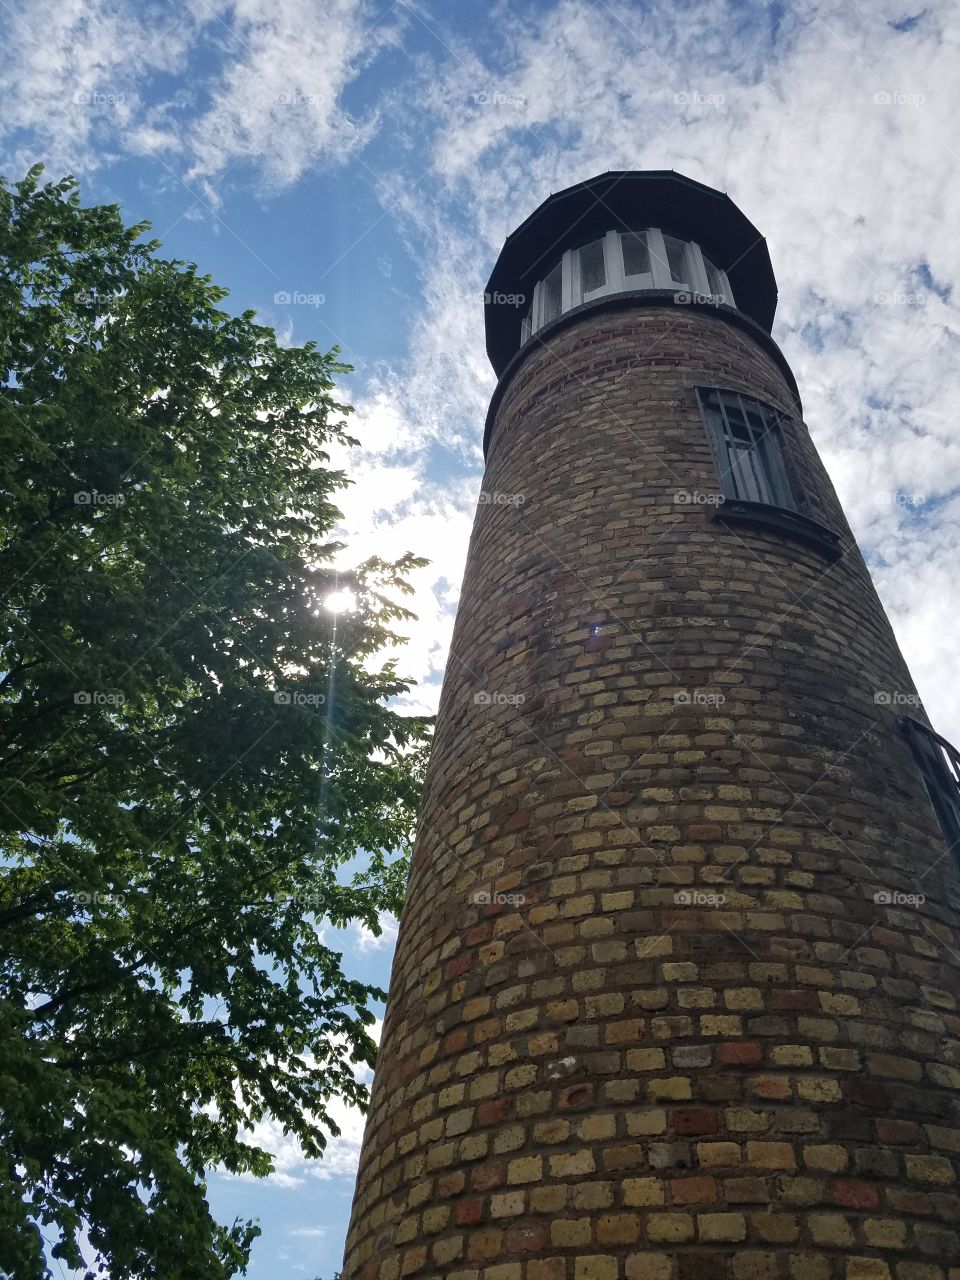 Lighthouse in Oshkosh